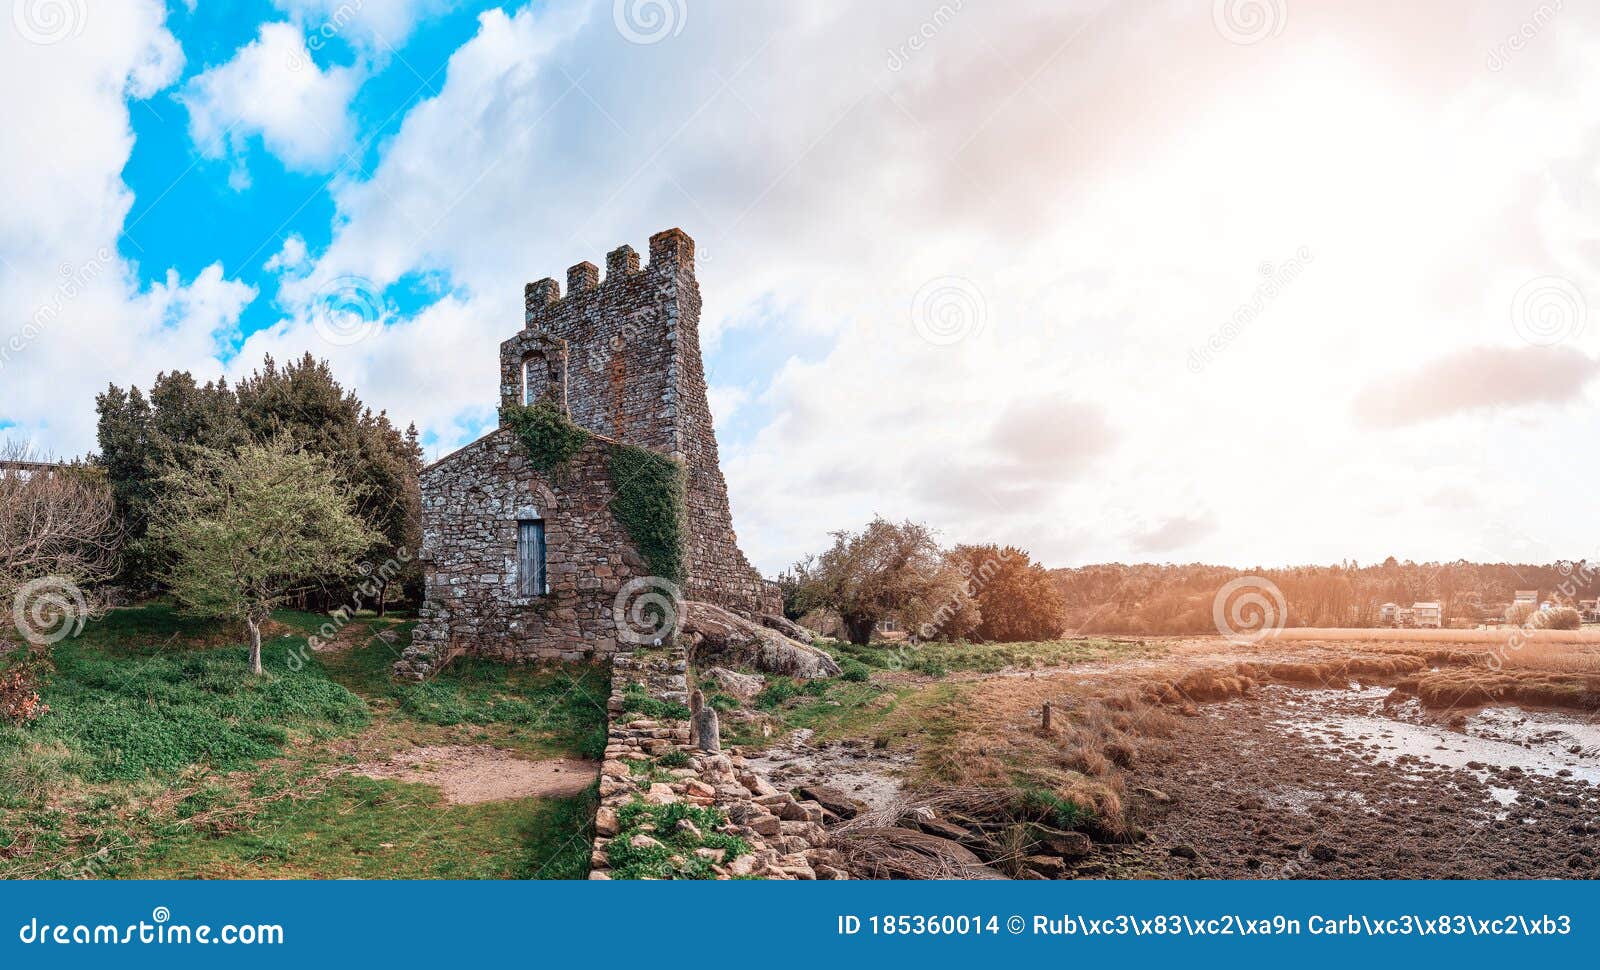 torres del oeste ruins in galicia